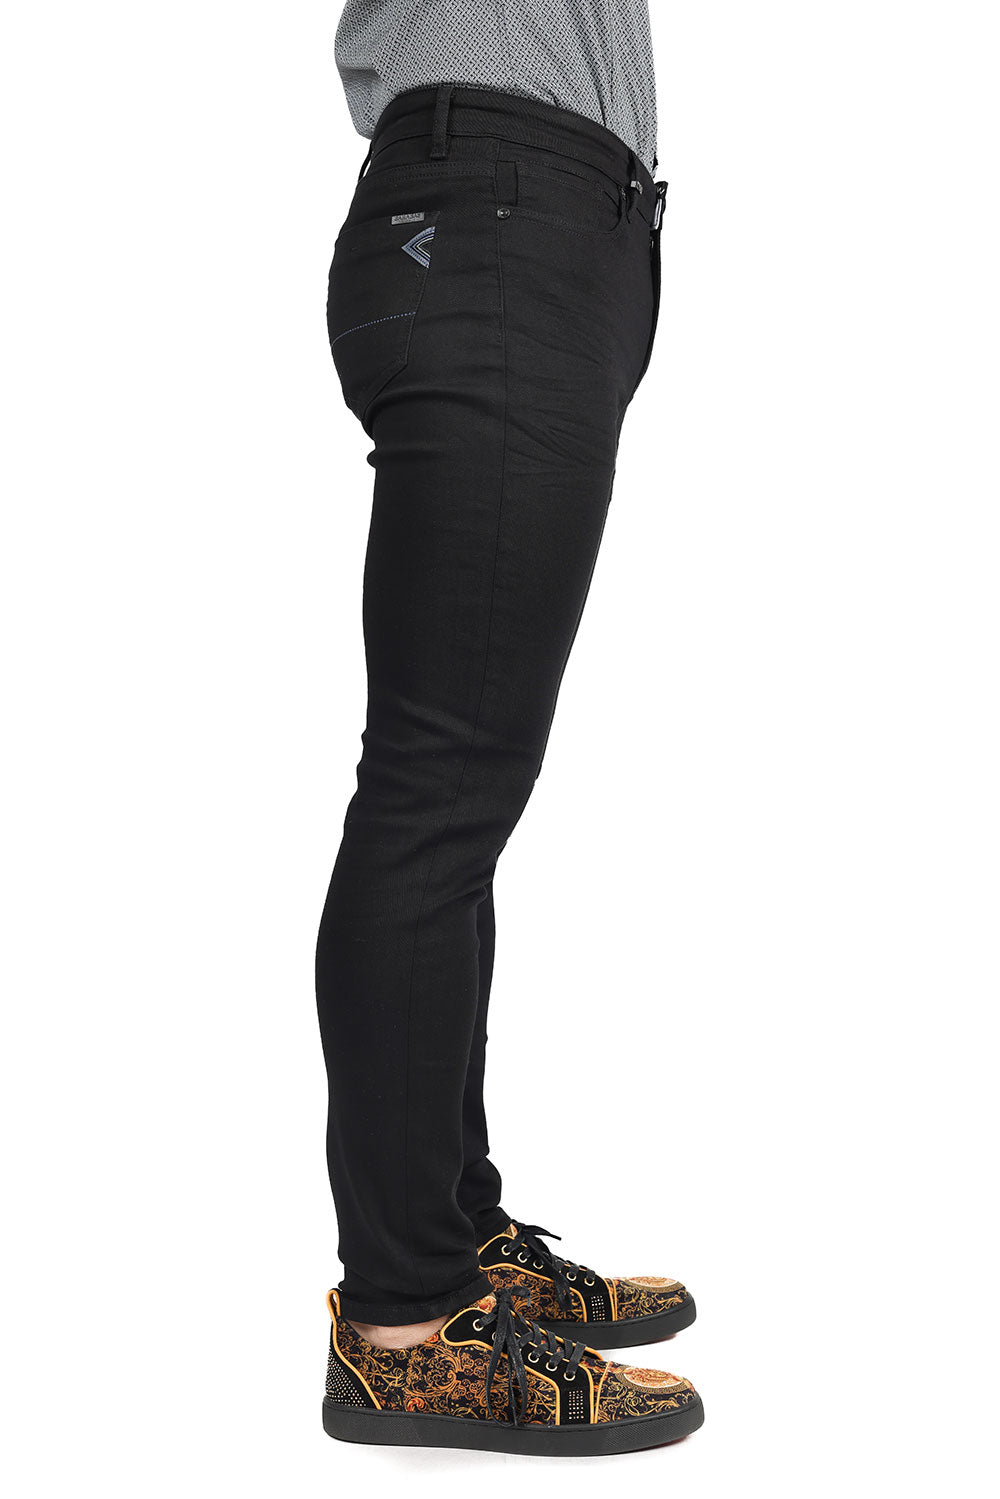 Barabas Men's Skinny Fit Classic Denim Solid Color Jeans 1700 Black